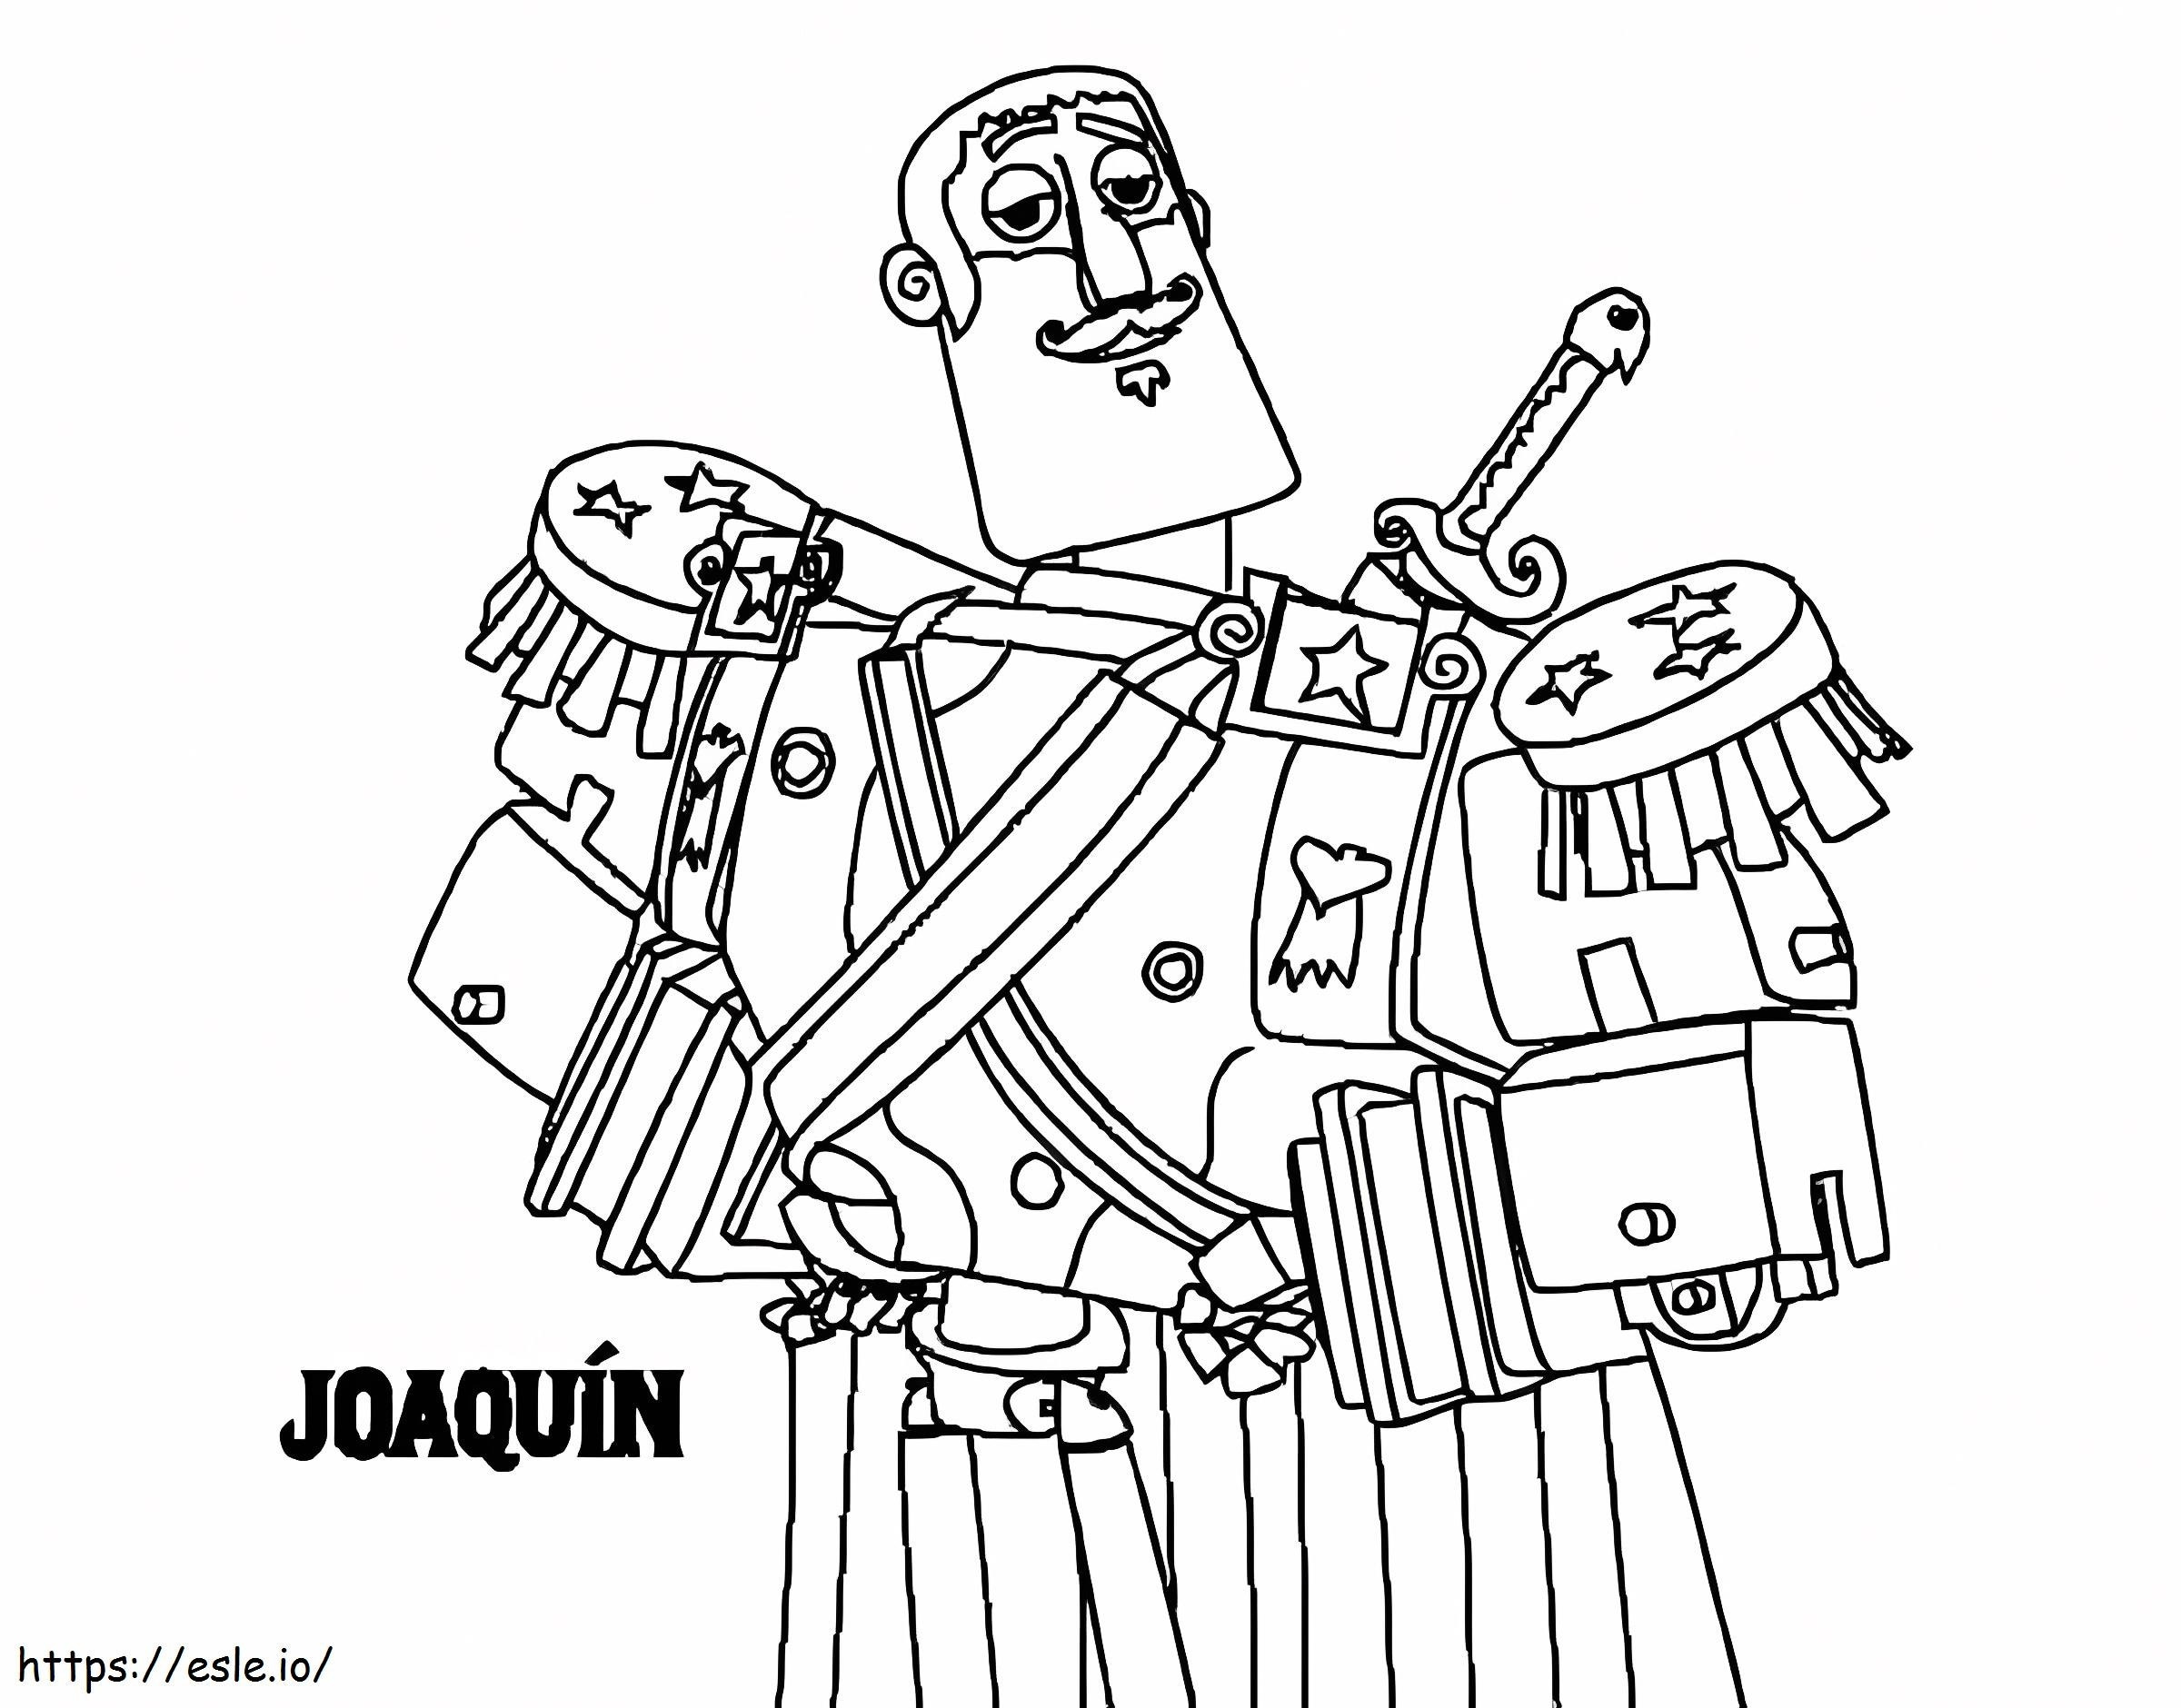 Joaquin din Cartea Vieții de colorat